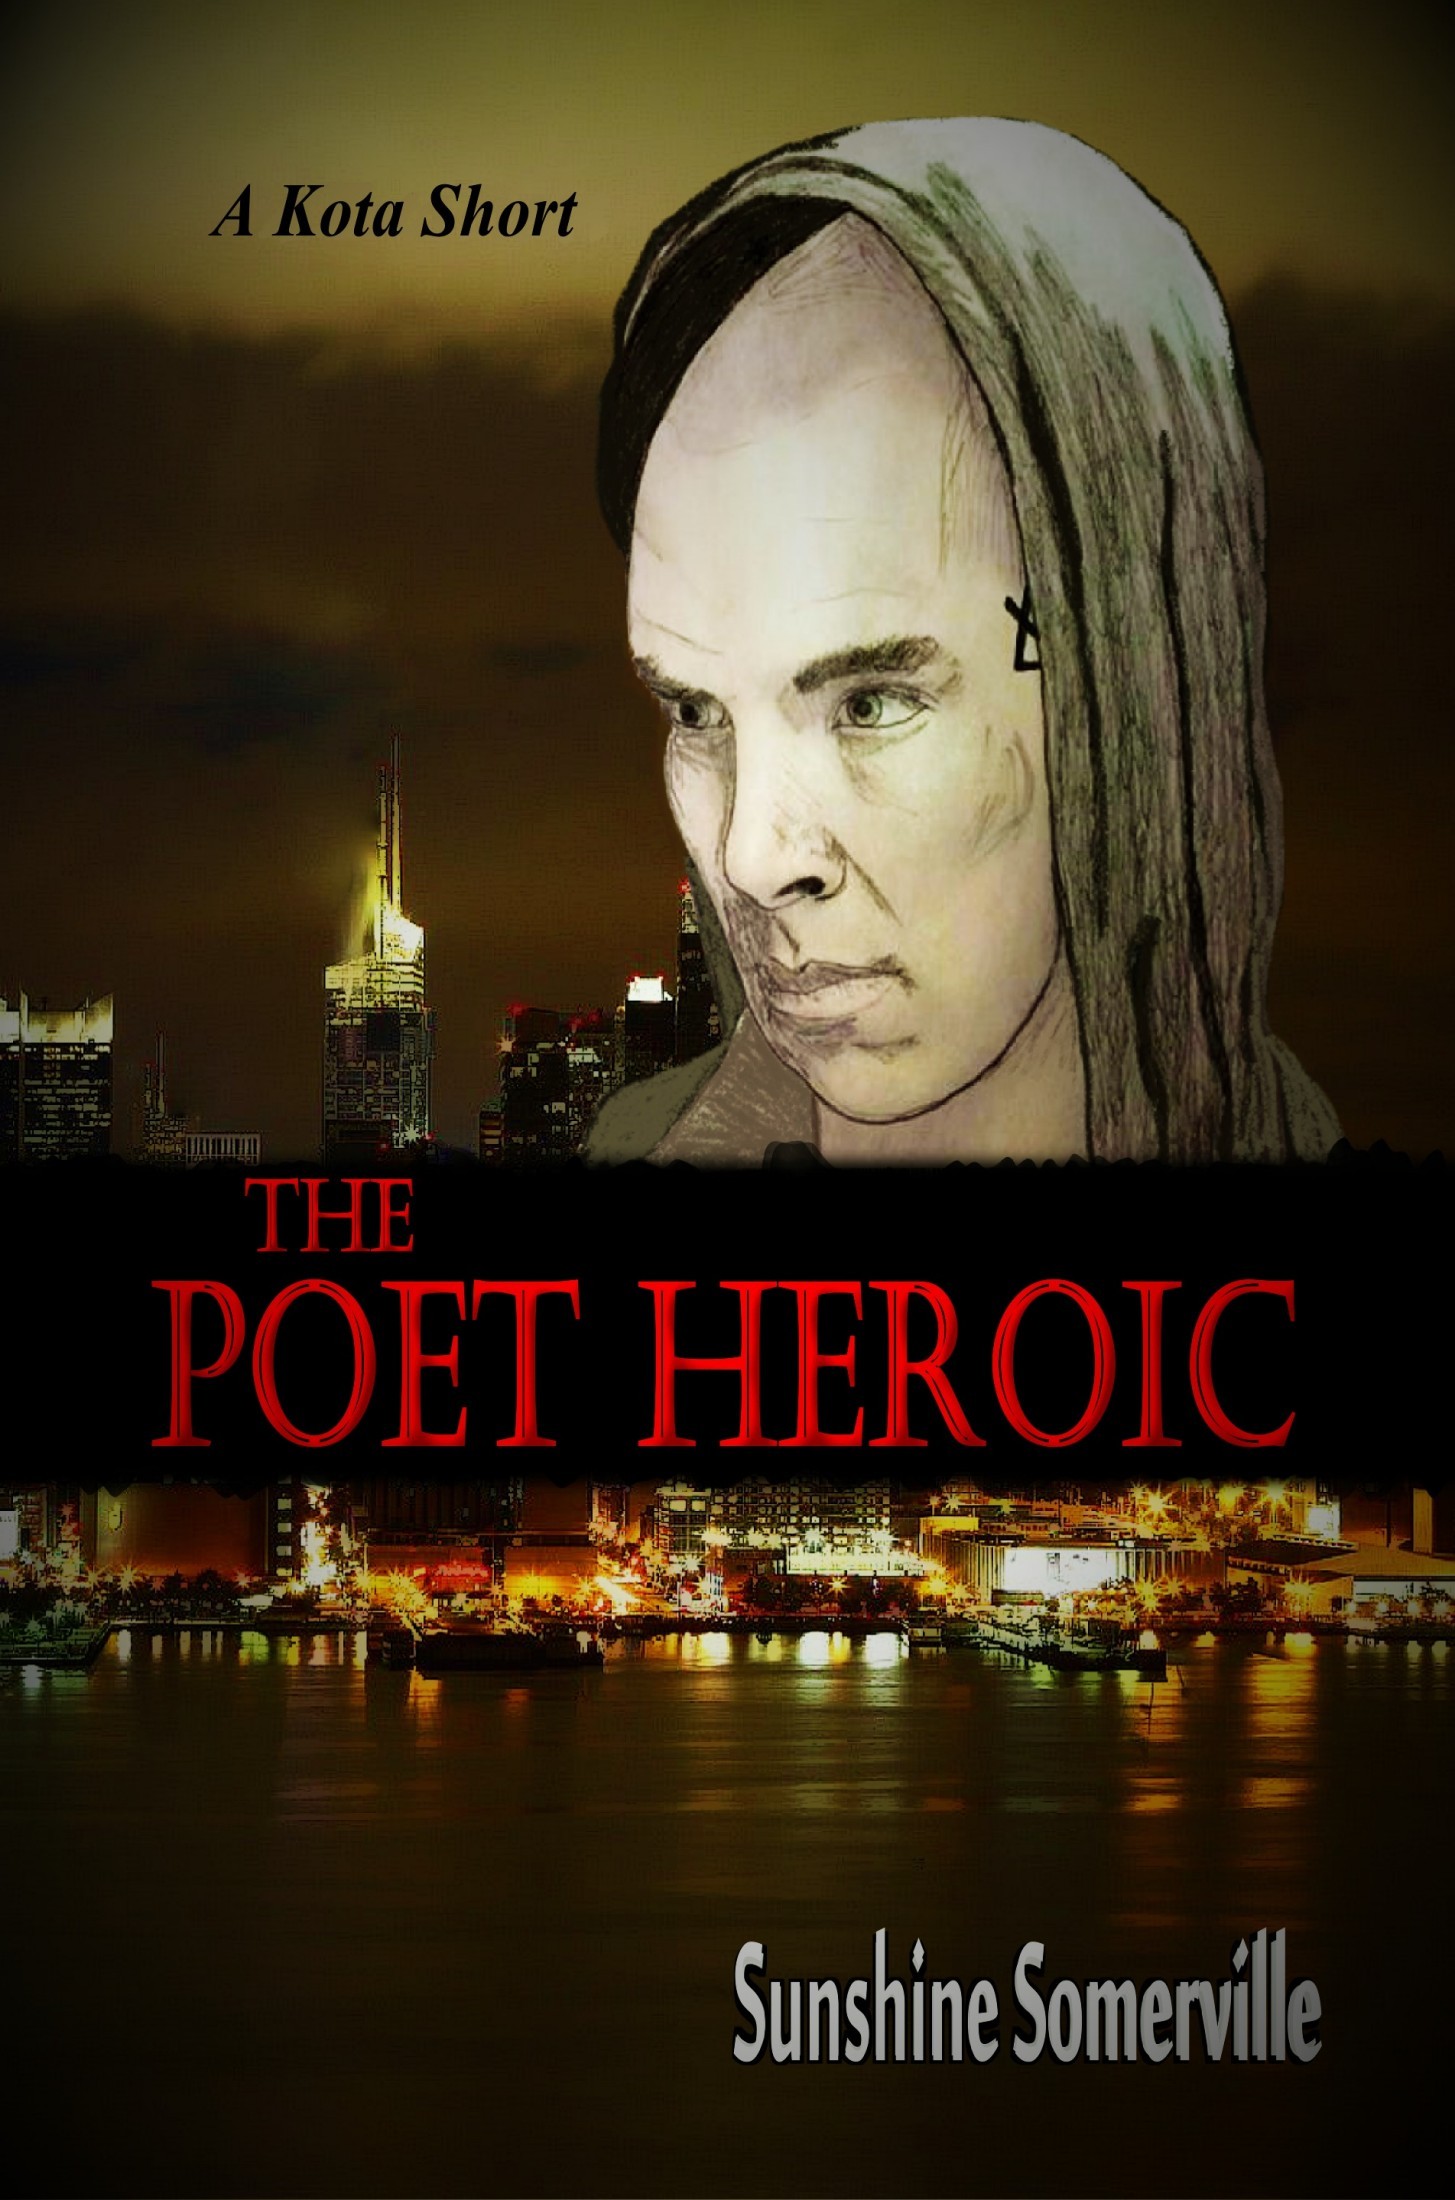 The Poet Heroic